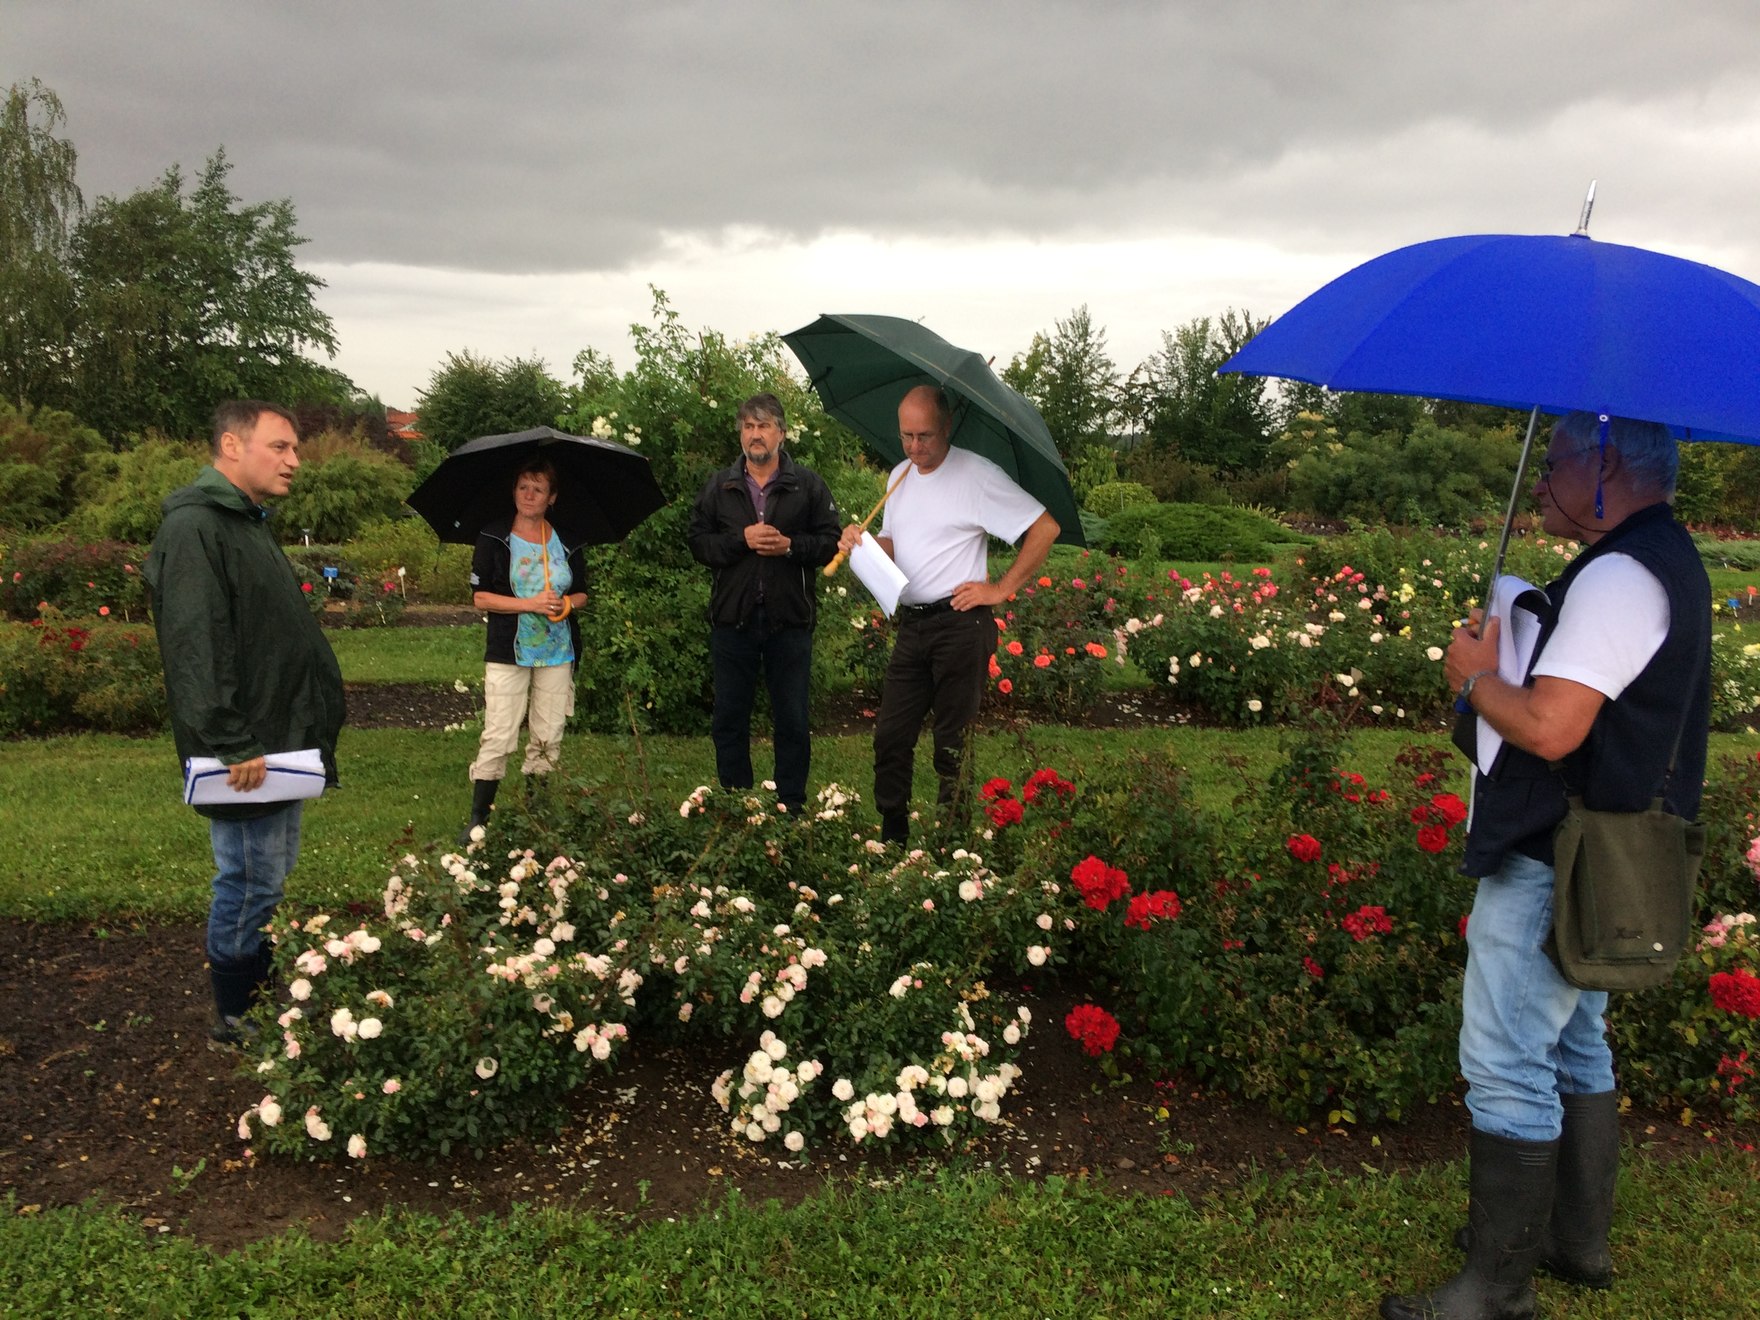 Begutachtung der Rosen am Vortag der Veranstaltung - Auch hier hat es schon kräftig geregnet. 